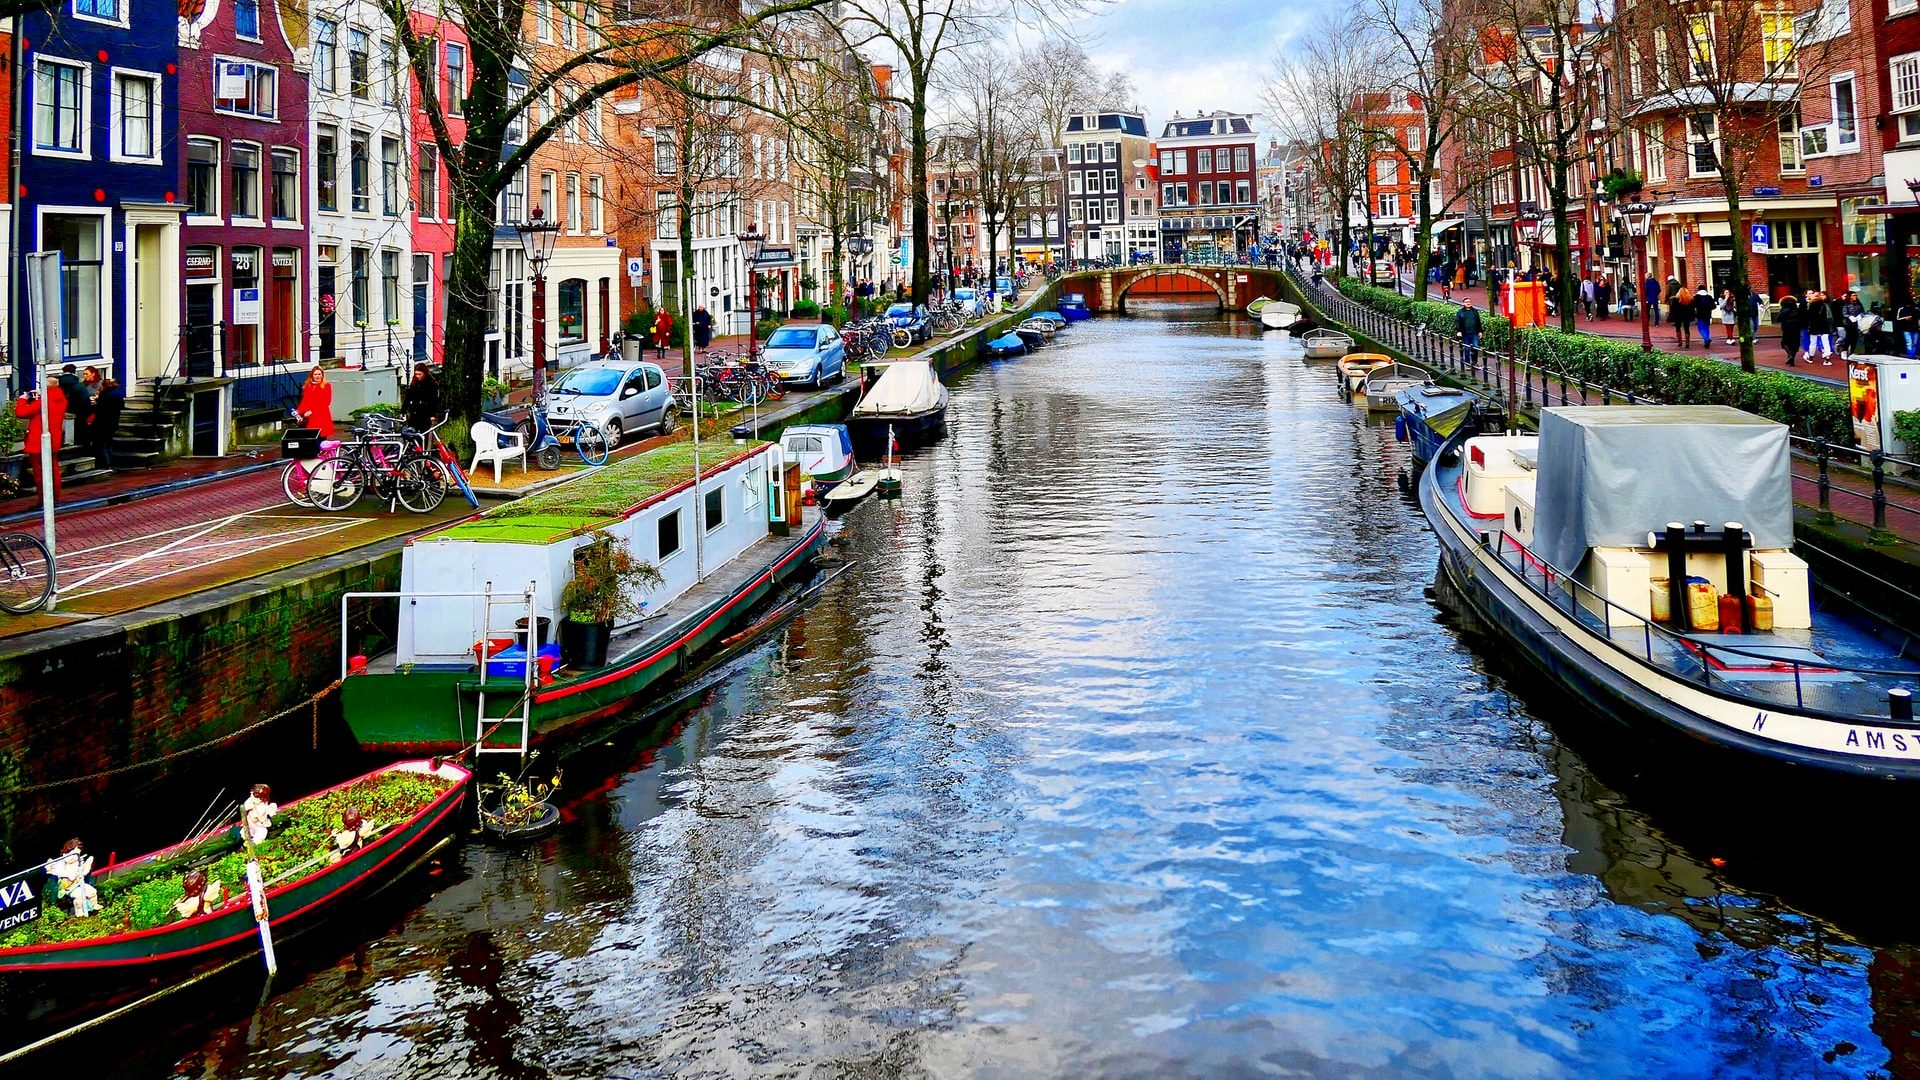 Con sus canales, hermosas casas e iglesias, atracciones, mercados y museos, el Centro de la Ciudad es la mejor ubicación para los turistas en Ámsterdam. Nuestro alojamiento favorito en esta zona es el Hotel TwentySeven